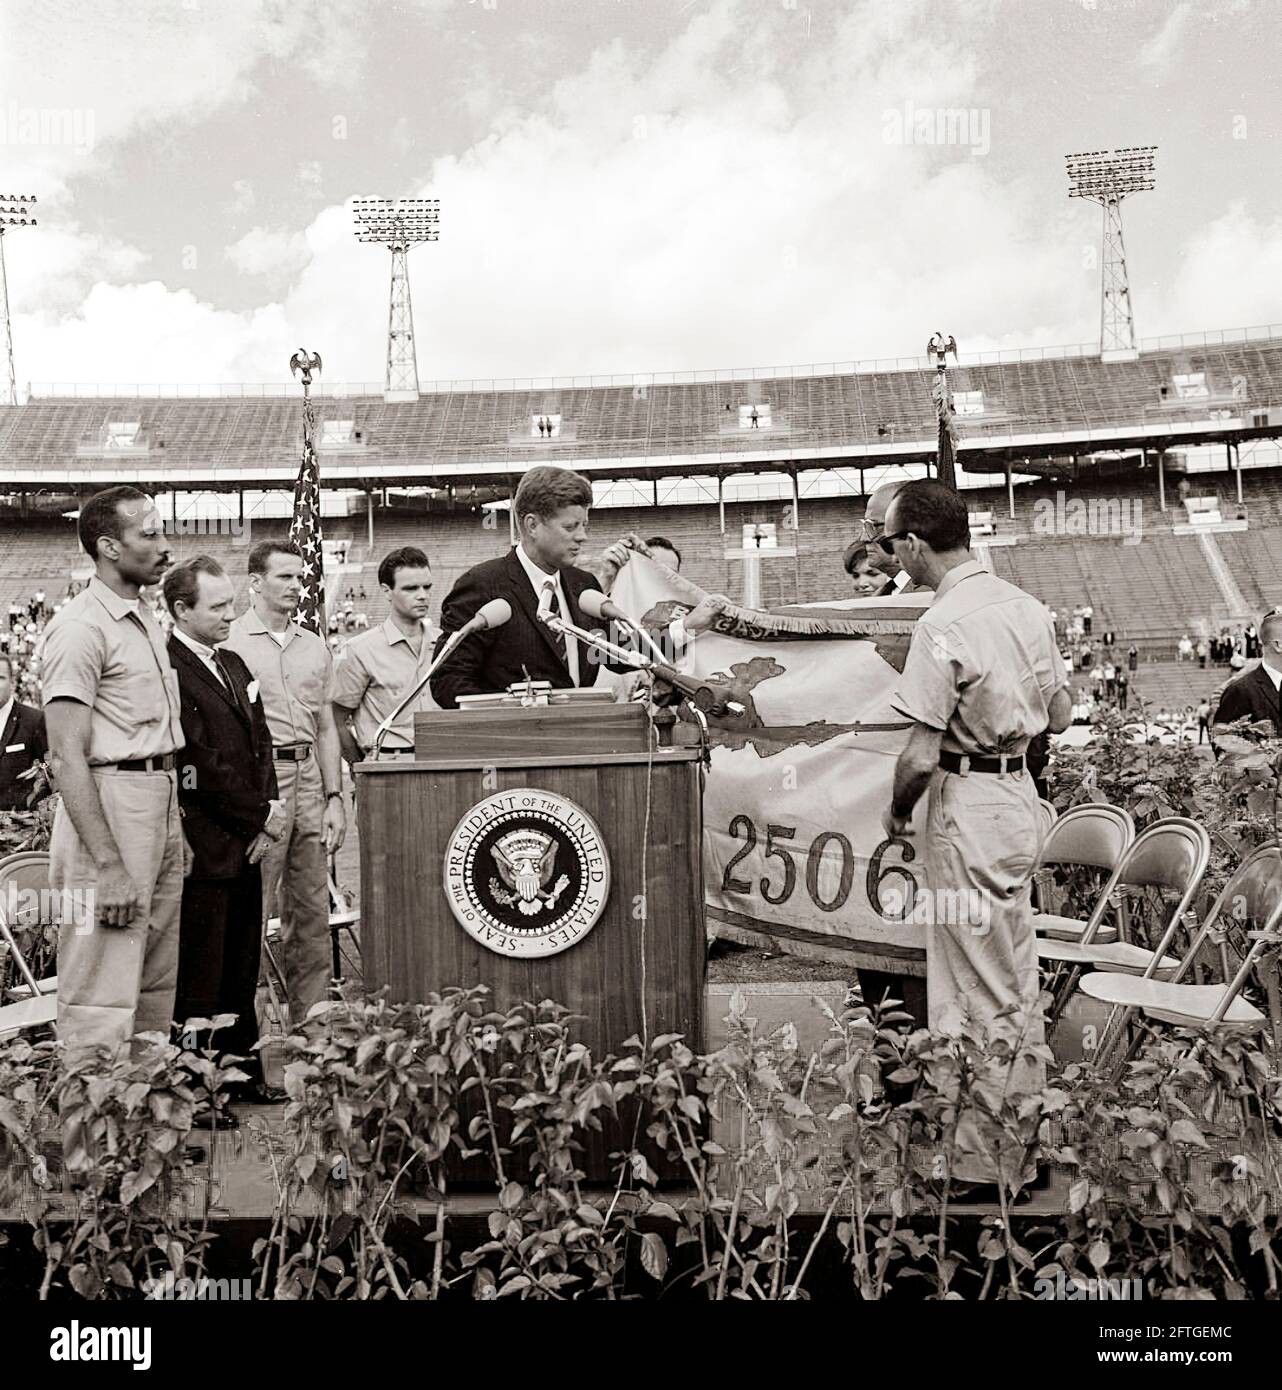 Präsident John F. Kennedy erhält die Flagge der 2506. Kubanischen Invasionsbrigade von Brigade-Mitgliedern während einer feierlichen Präsentation im Orange Bowl Stadium in Miami, Florida. Auf dem Rednerpult (von links nach rechts): Erneido Oliva, zweiter Kommandant der Brigade; Robert King High, Bürgermeister von Miami; Jose Pérez San Román, Kommandeur der Brigade; Manuel Artime, Zivilchef der Brigade; Präsident Kennedy (am Rednerpult mit Flagge); Dolmetscher des US-Außenministeriums, Donald Barnes (meist hinten versteckt, mit Flagge); First Lady Jacqueline Kennedy – teilweise hinter Flagge versteckt. Stockfoto